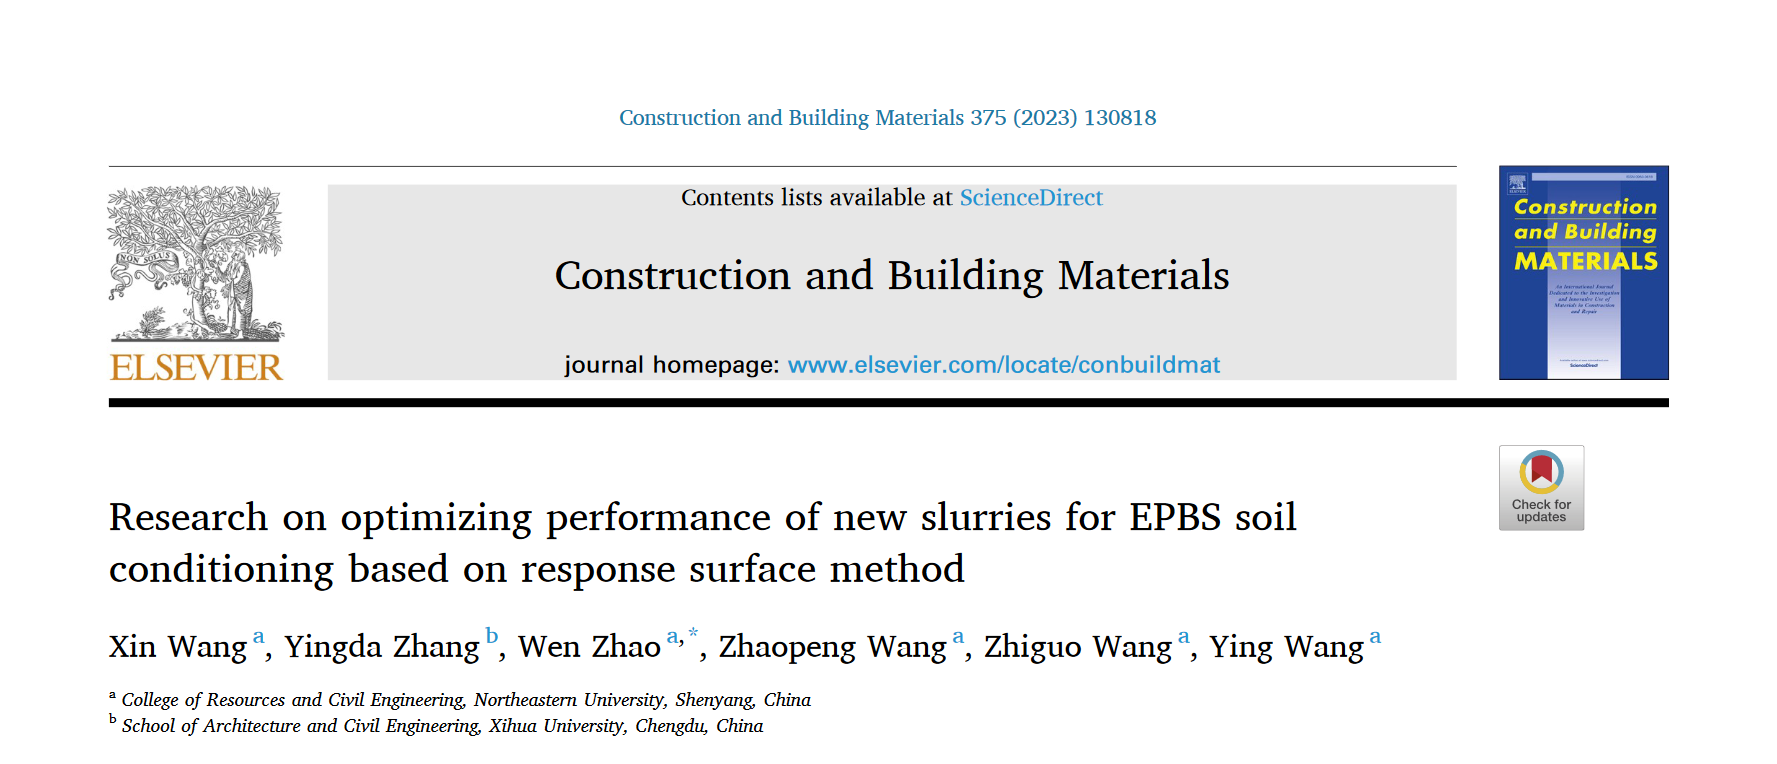 0428 论文阅读 research on optimizing performance of new slurries for EPBS soil conditioning based on response surface method